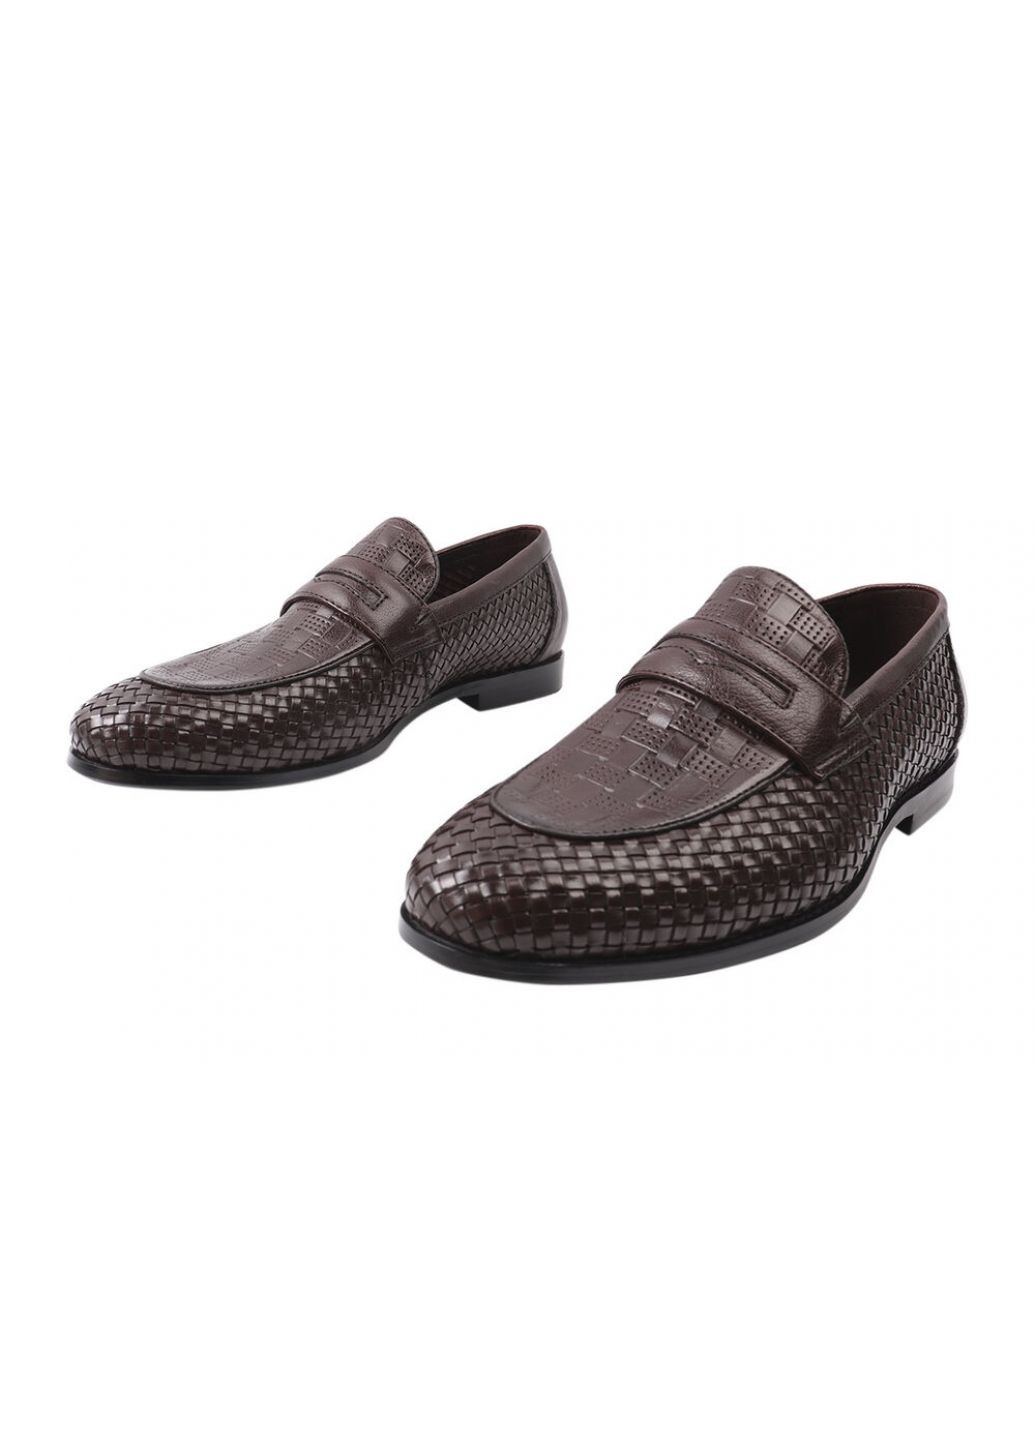 Коричневые туфли мужские из натуральной кожи, на низком ходу, коричневые, lido marinozi Lido Marinozzi